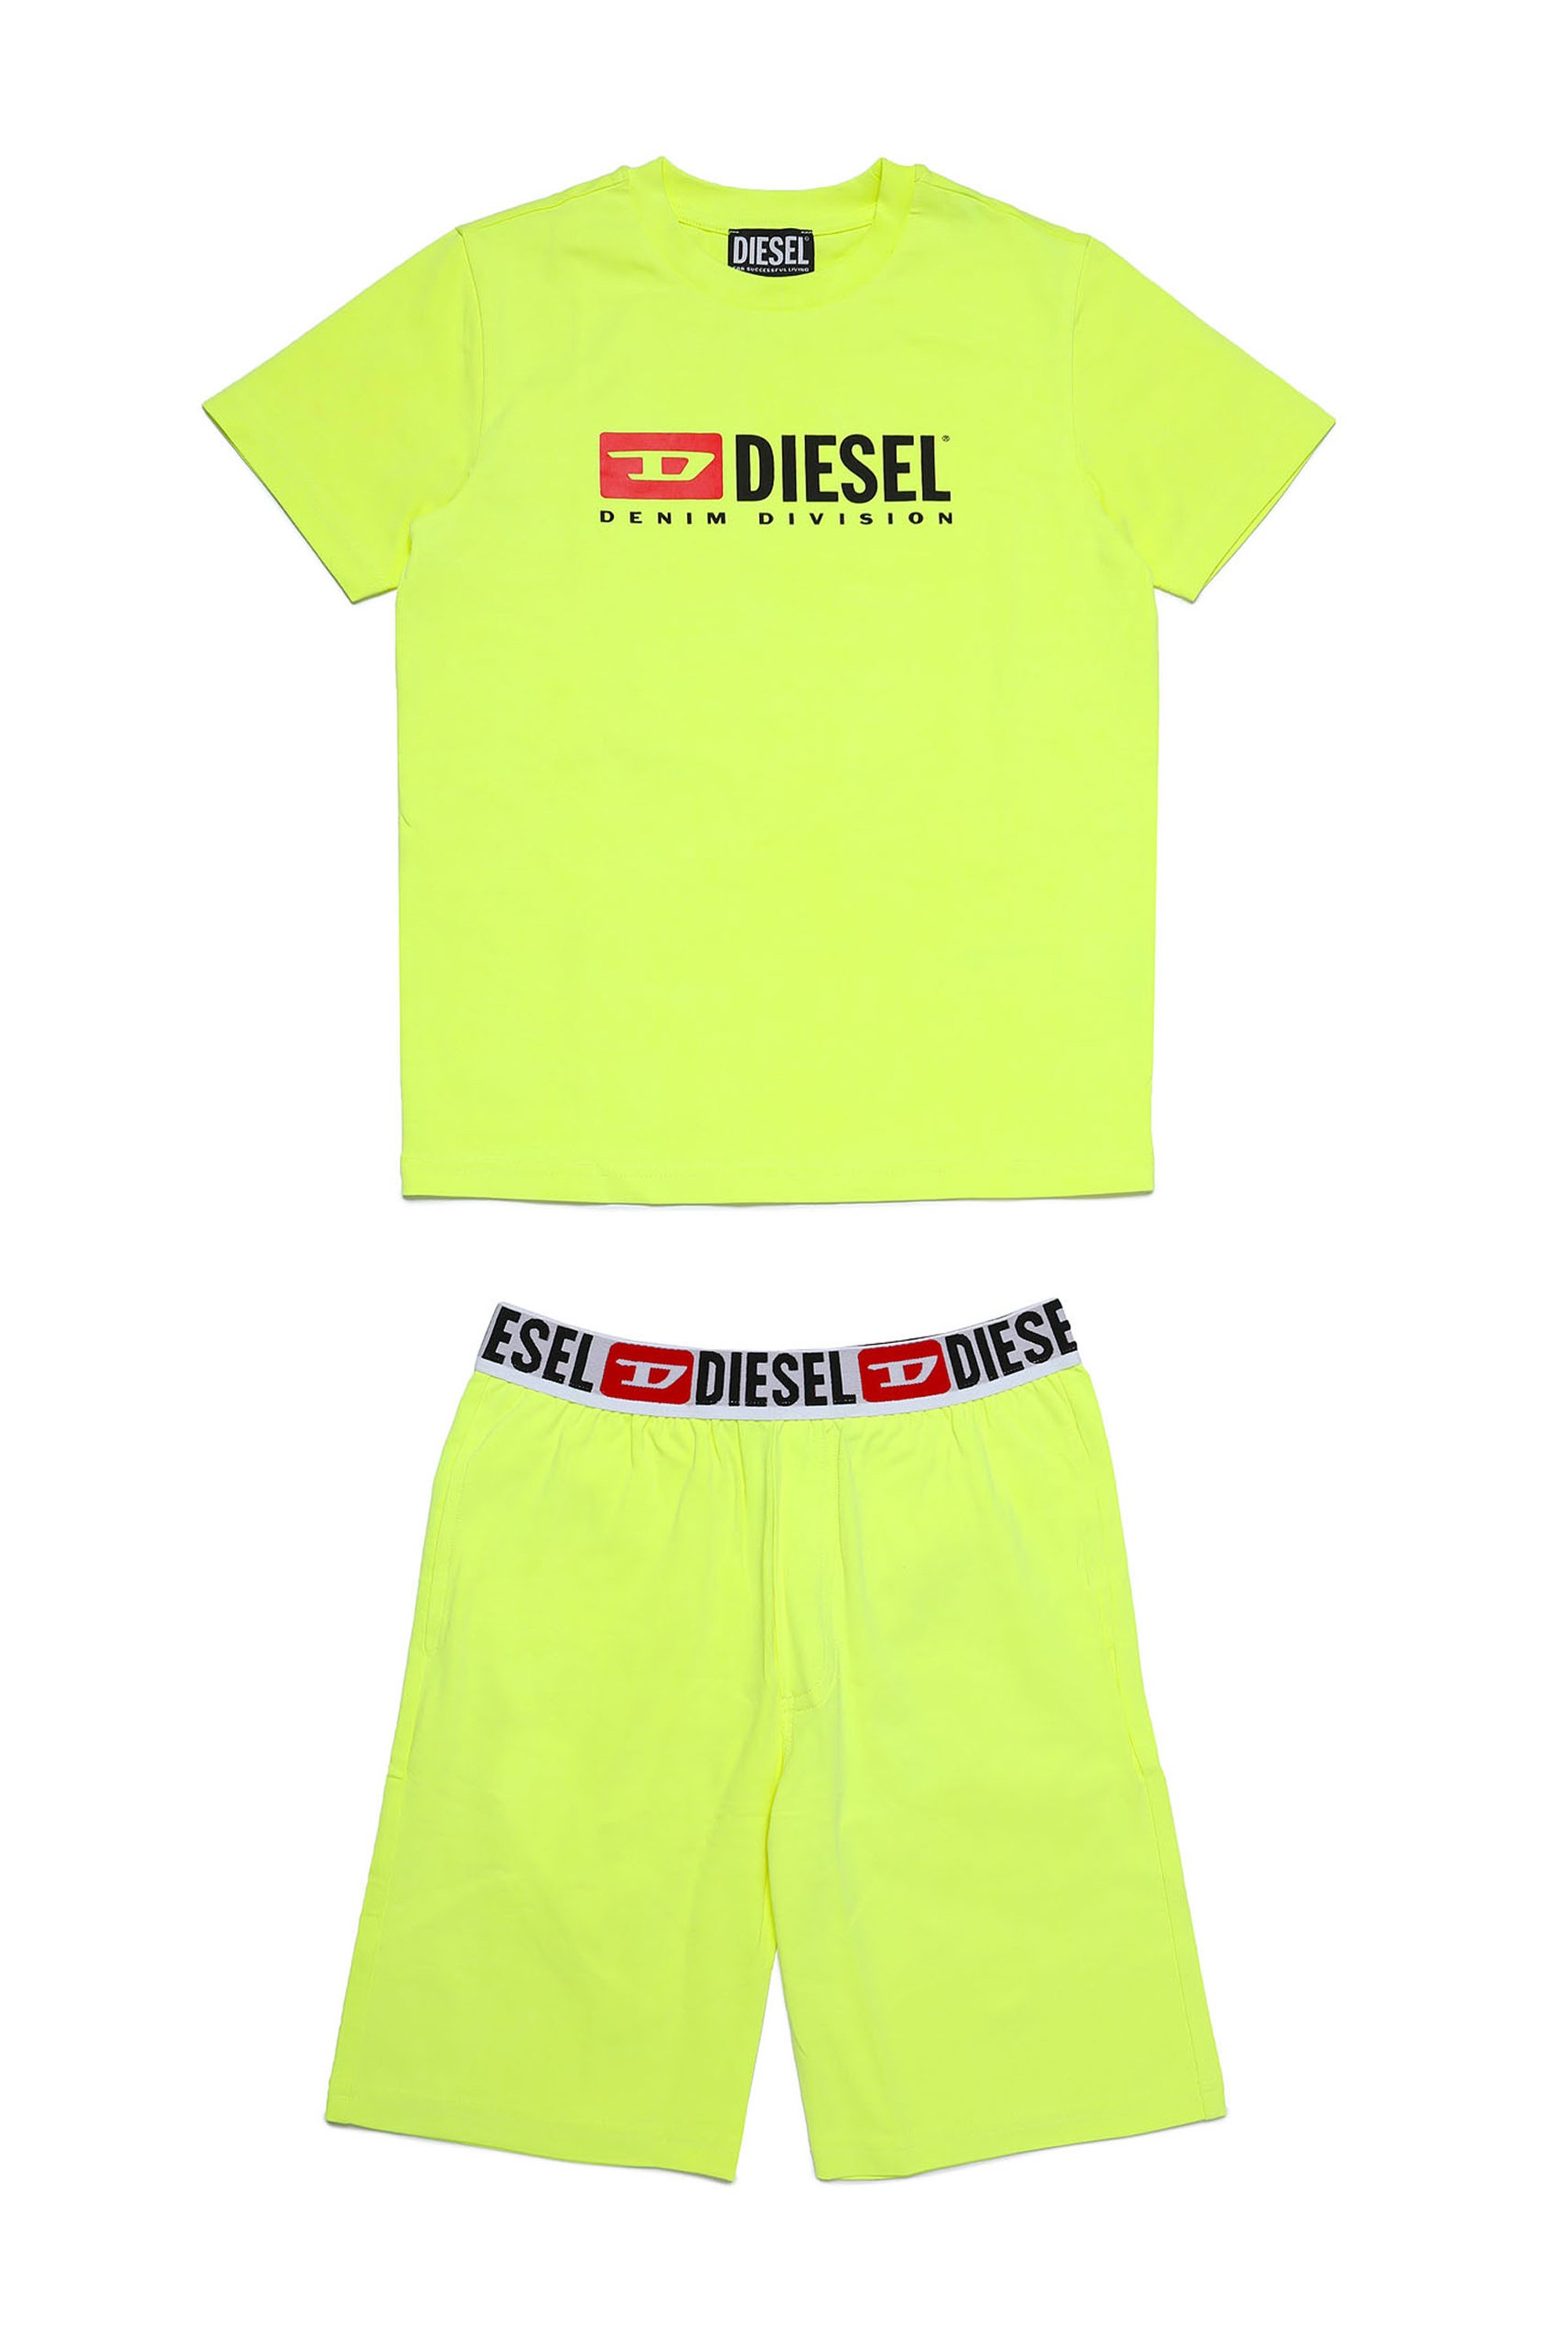 Diesel - UNJULIO MC, Yellow Fluo - Image 1